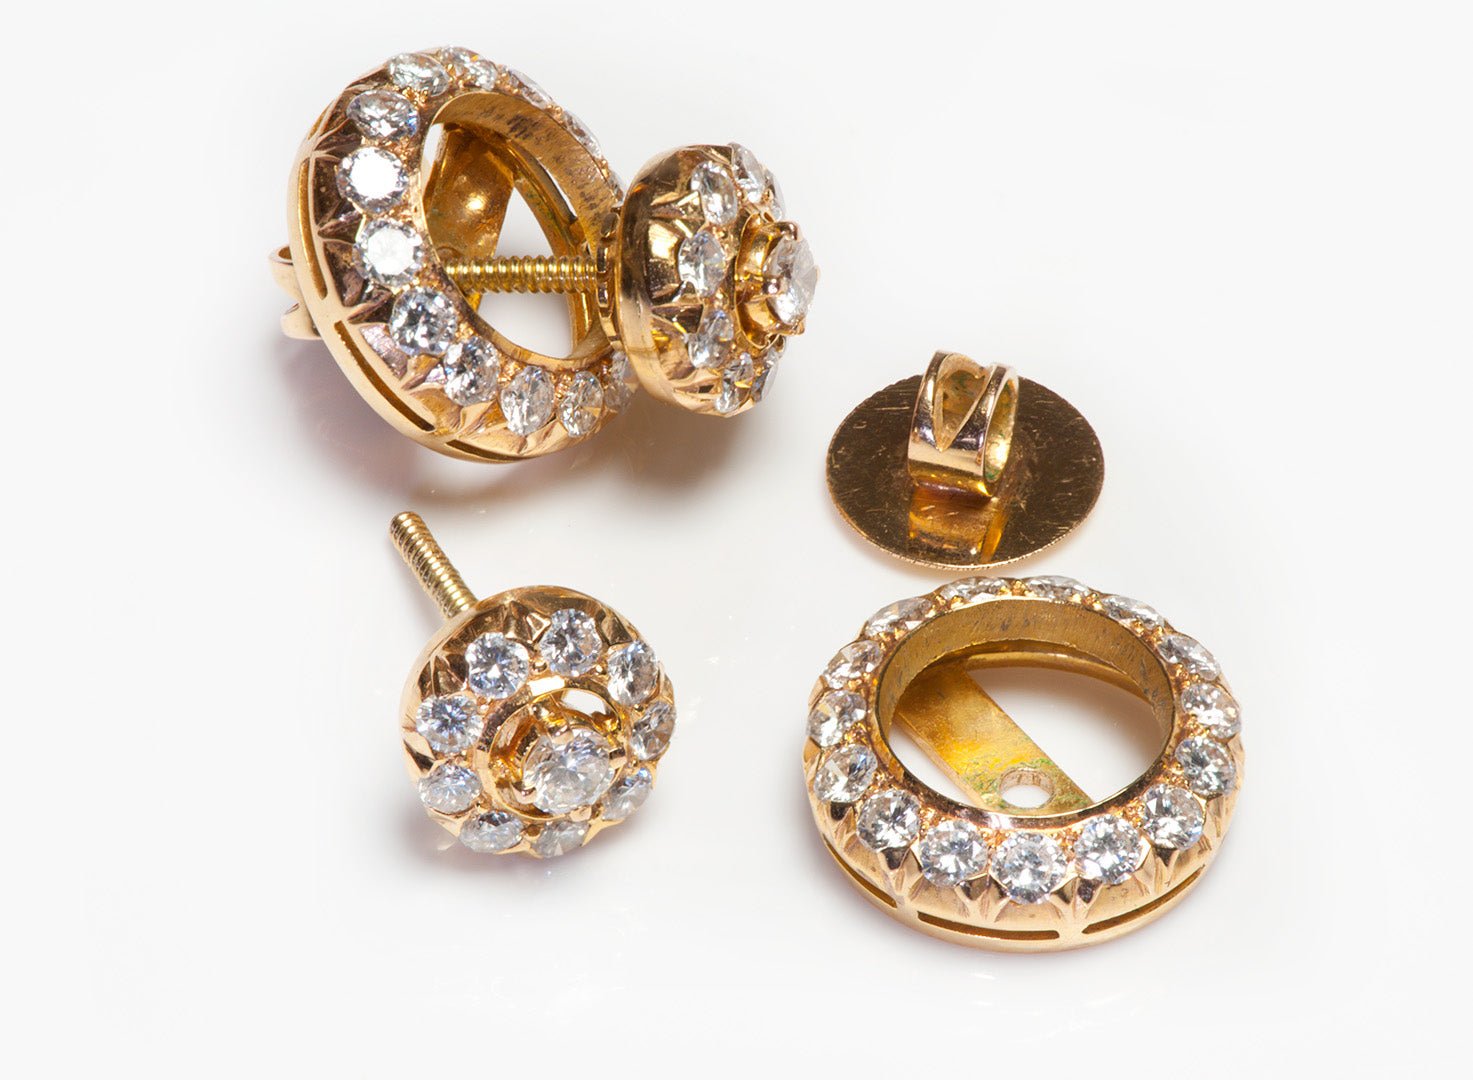 18K Gold Diamond Stud Earrings